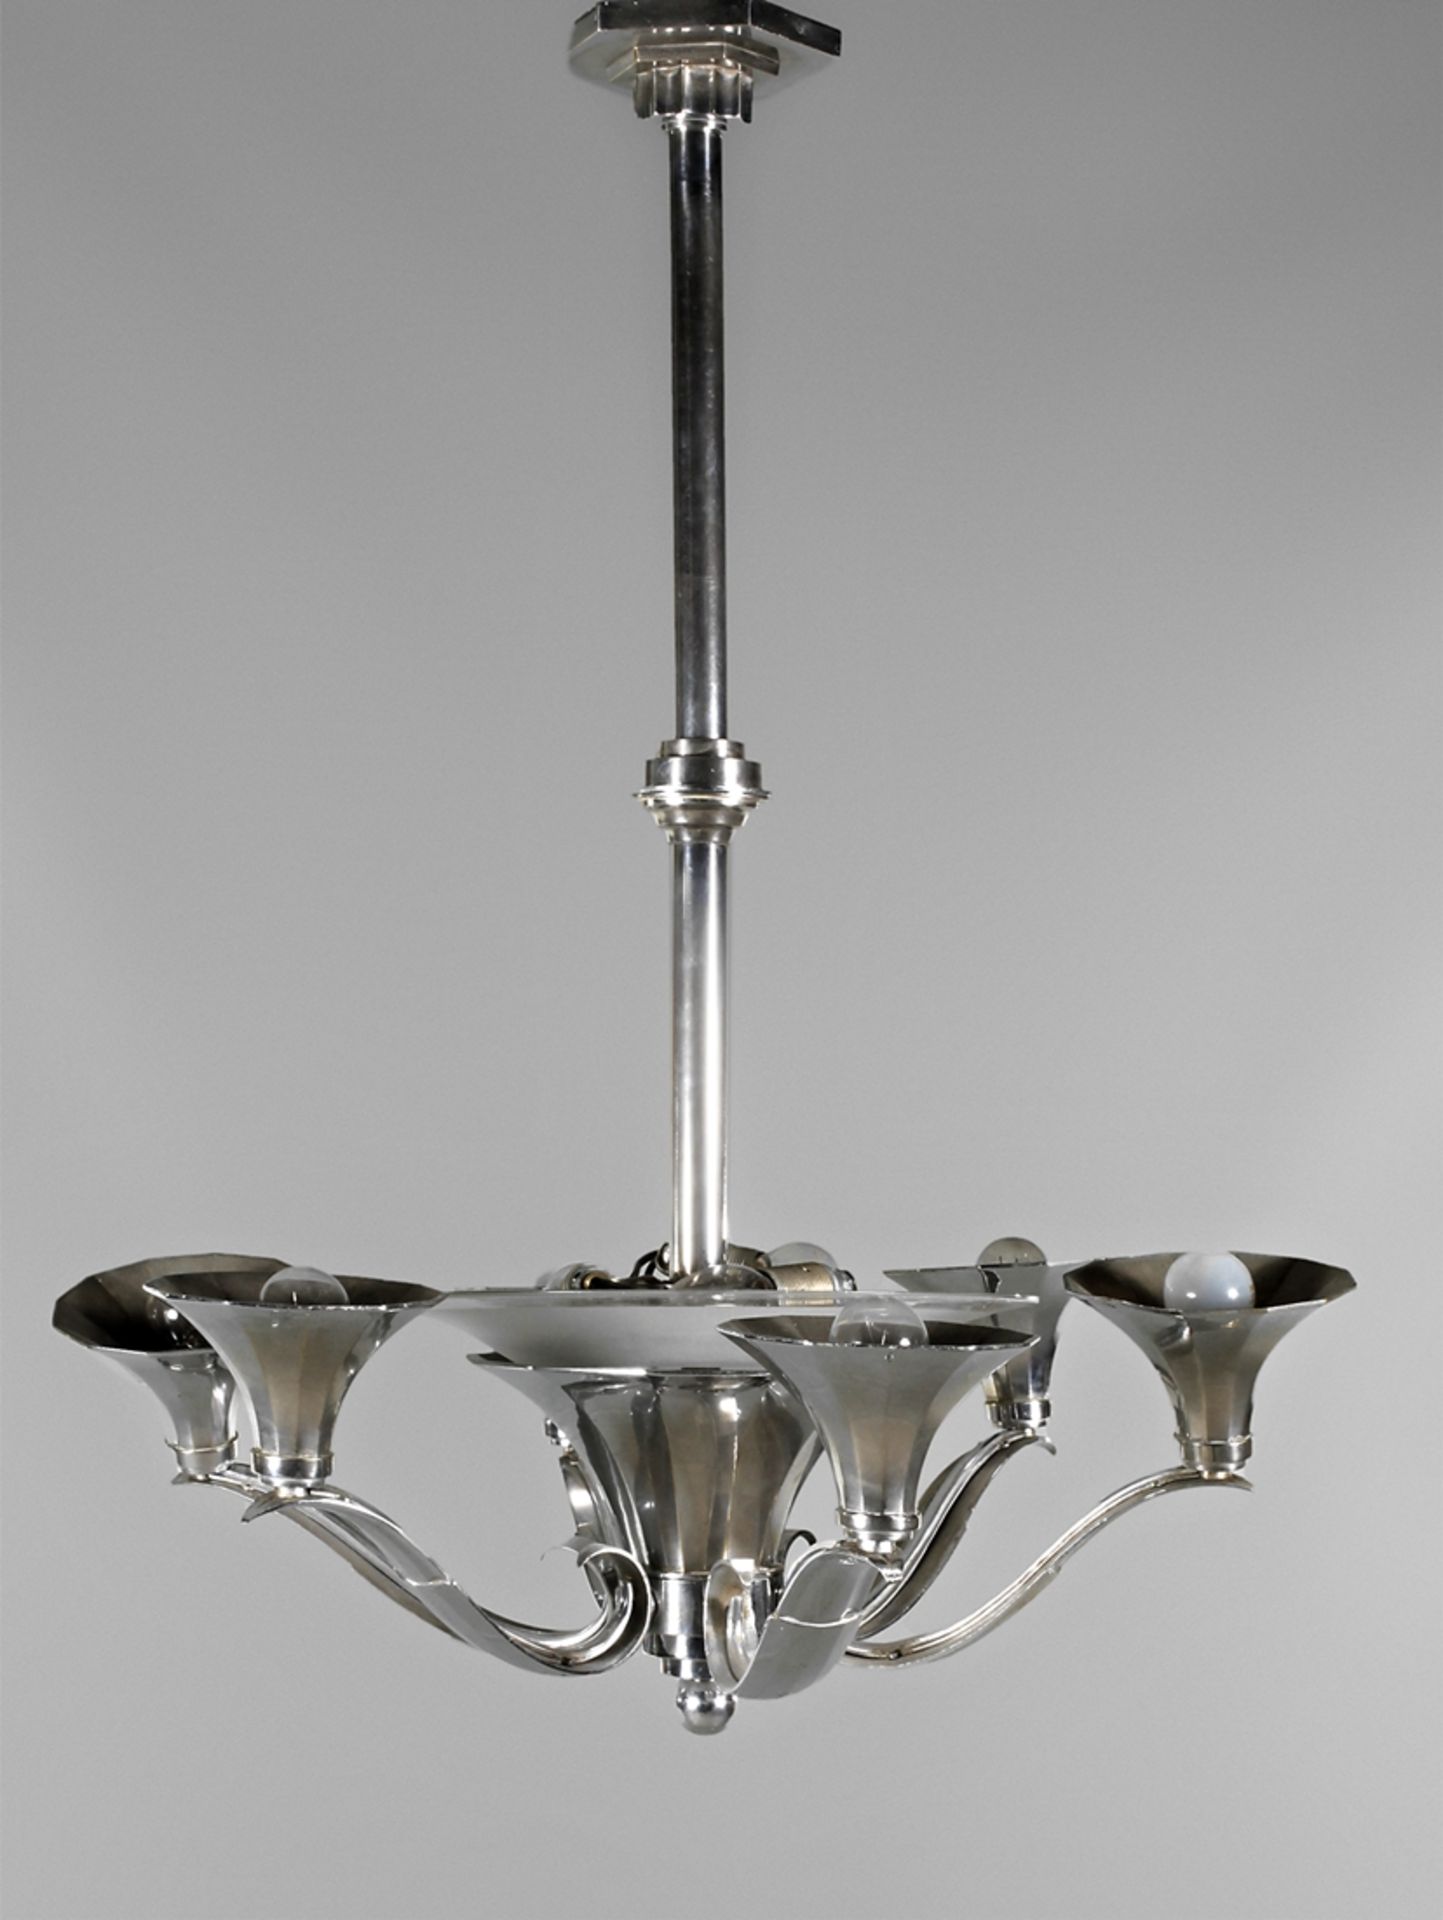 Deckenlampe Art découm 1930, verchromtes Metallgestänge mit zentralem trichterförmigen Schirm aus